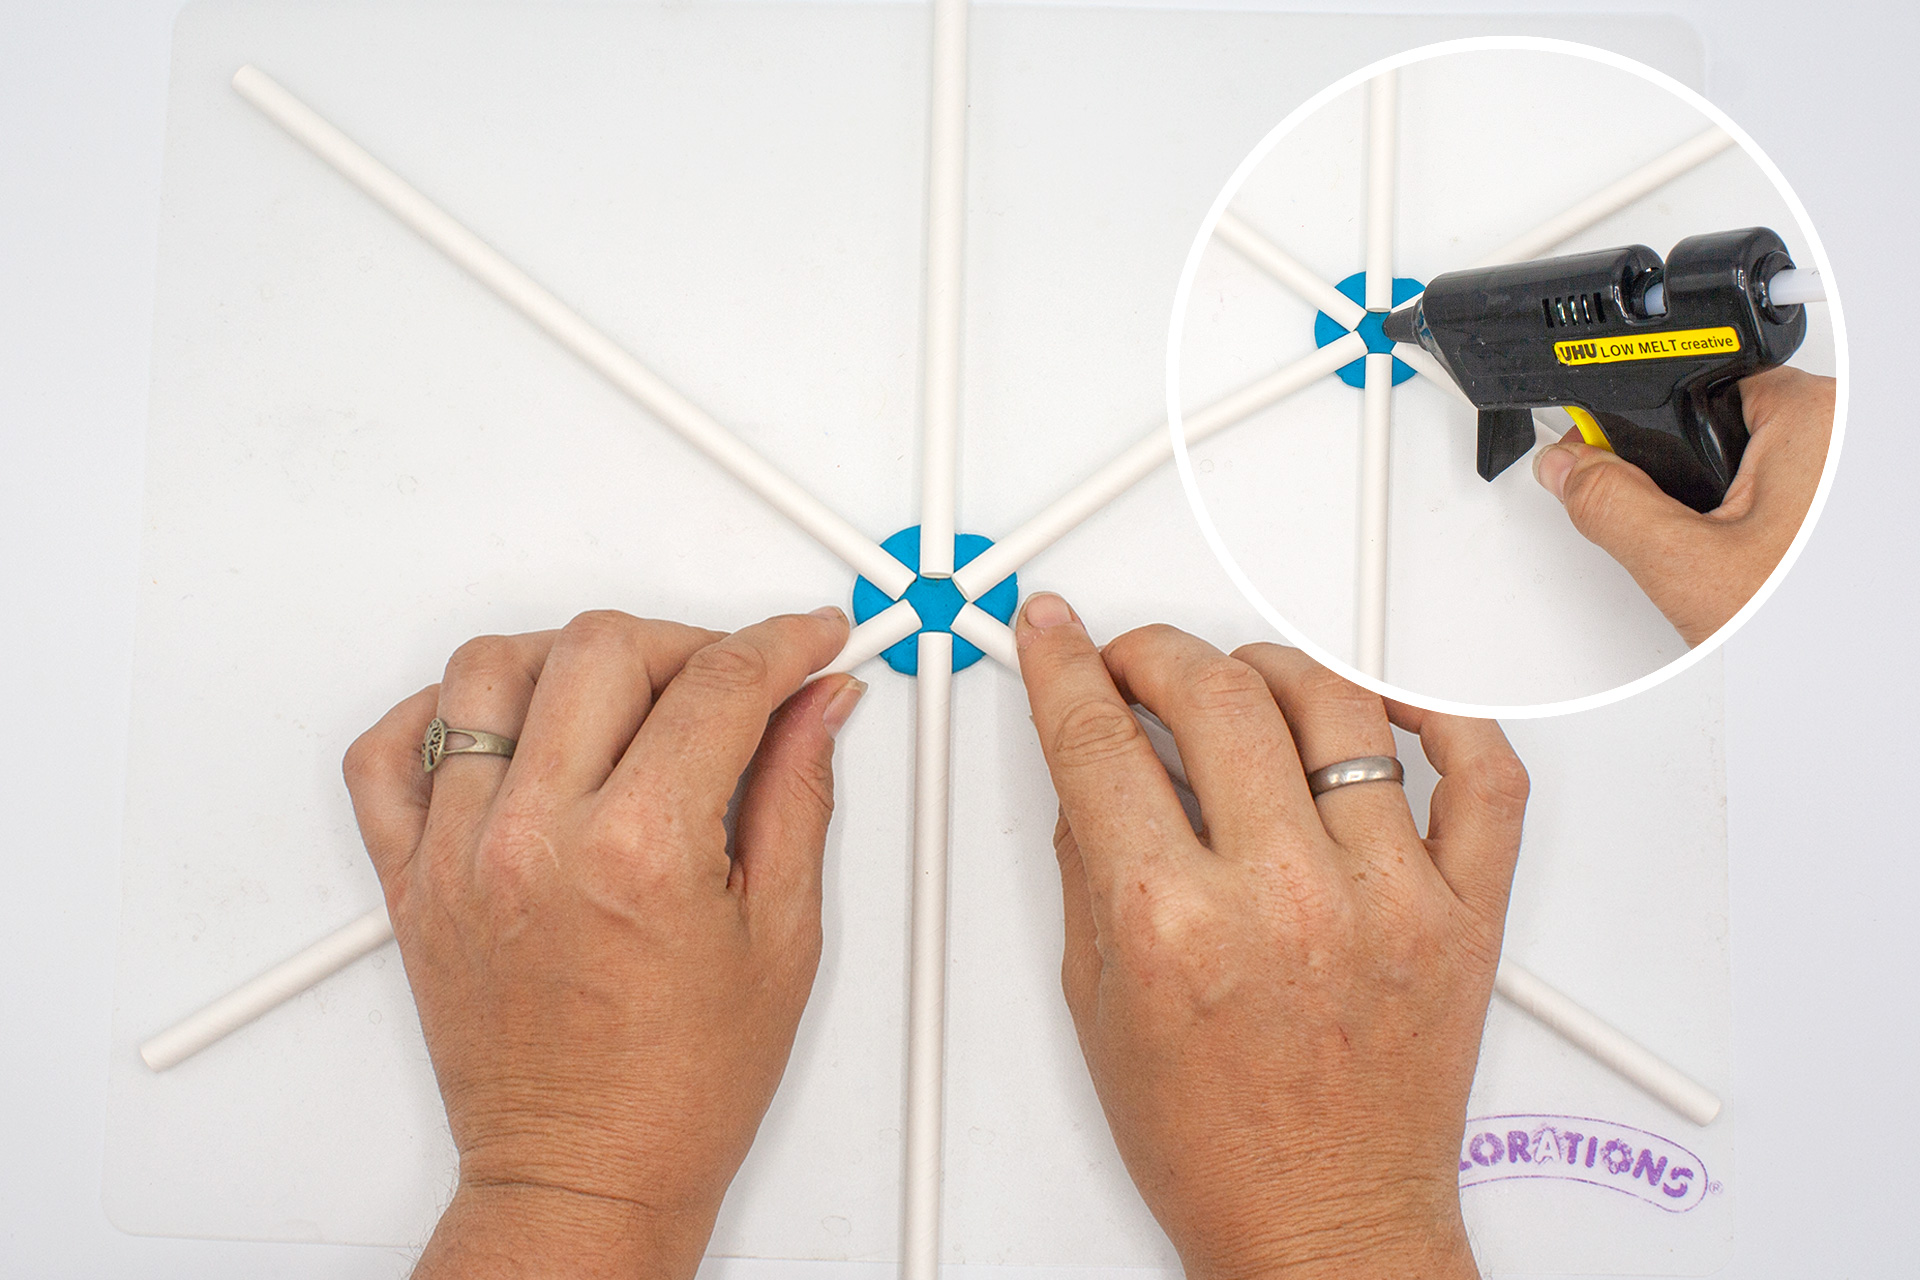 <p>Das Gerüst für den Hexagon-Drachen bauen wir aus Papiertrinkhalmen und mit der Hilfe von Knete. Auf eine Bastelmatte geben